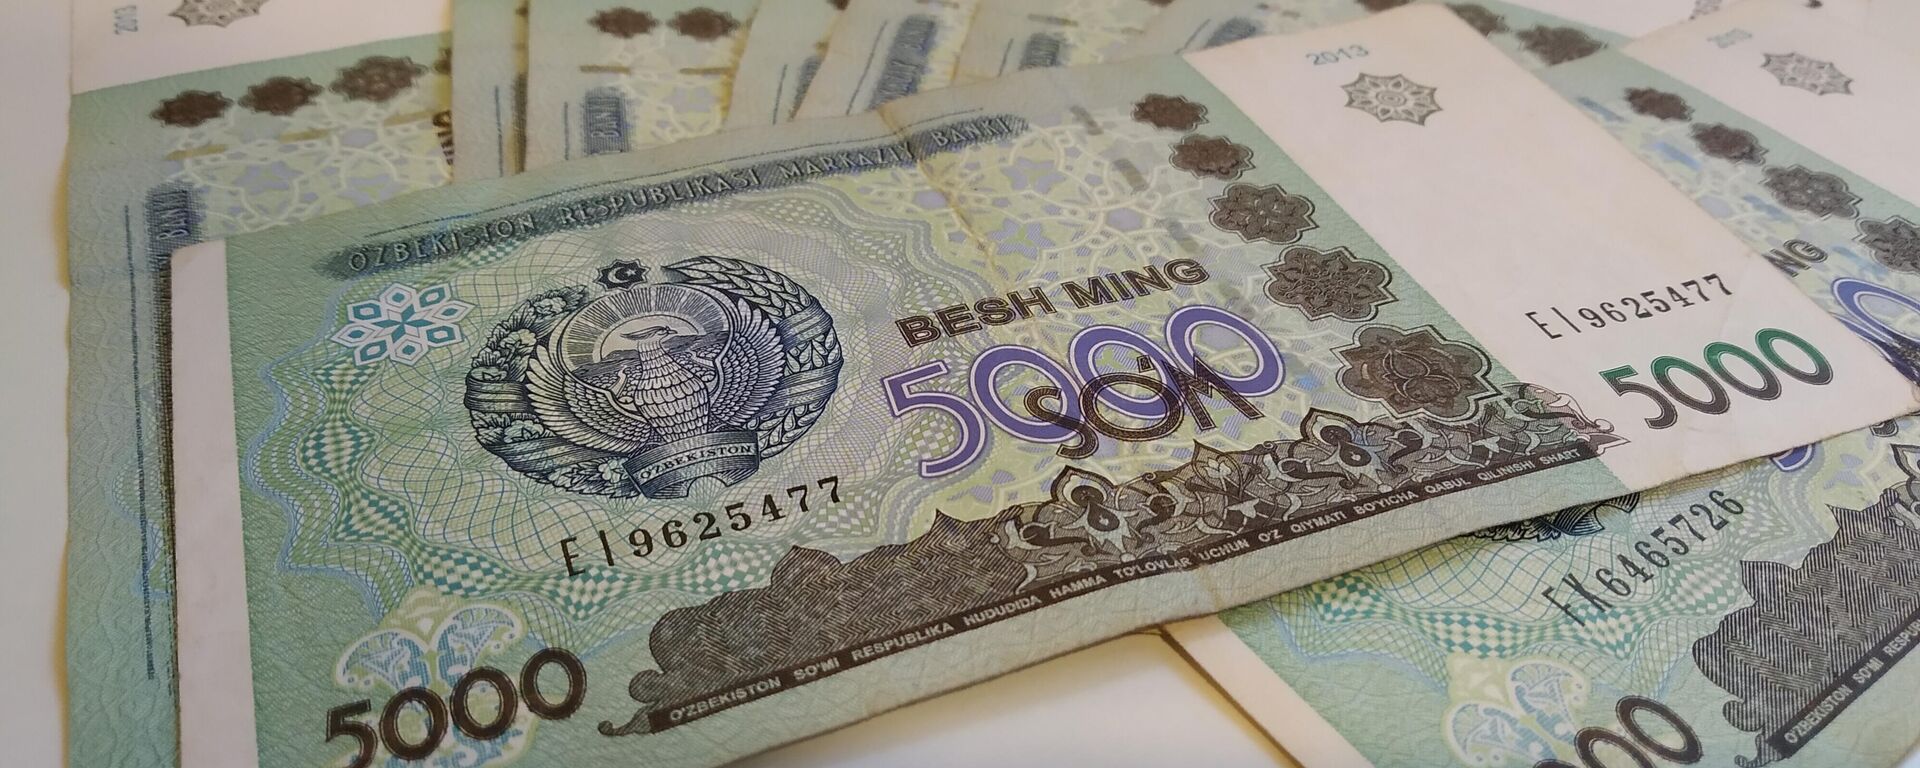 Узбекские деньги, 5000 сумов - Sputnik Узбекистан, 1920, 24.09.2021